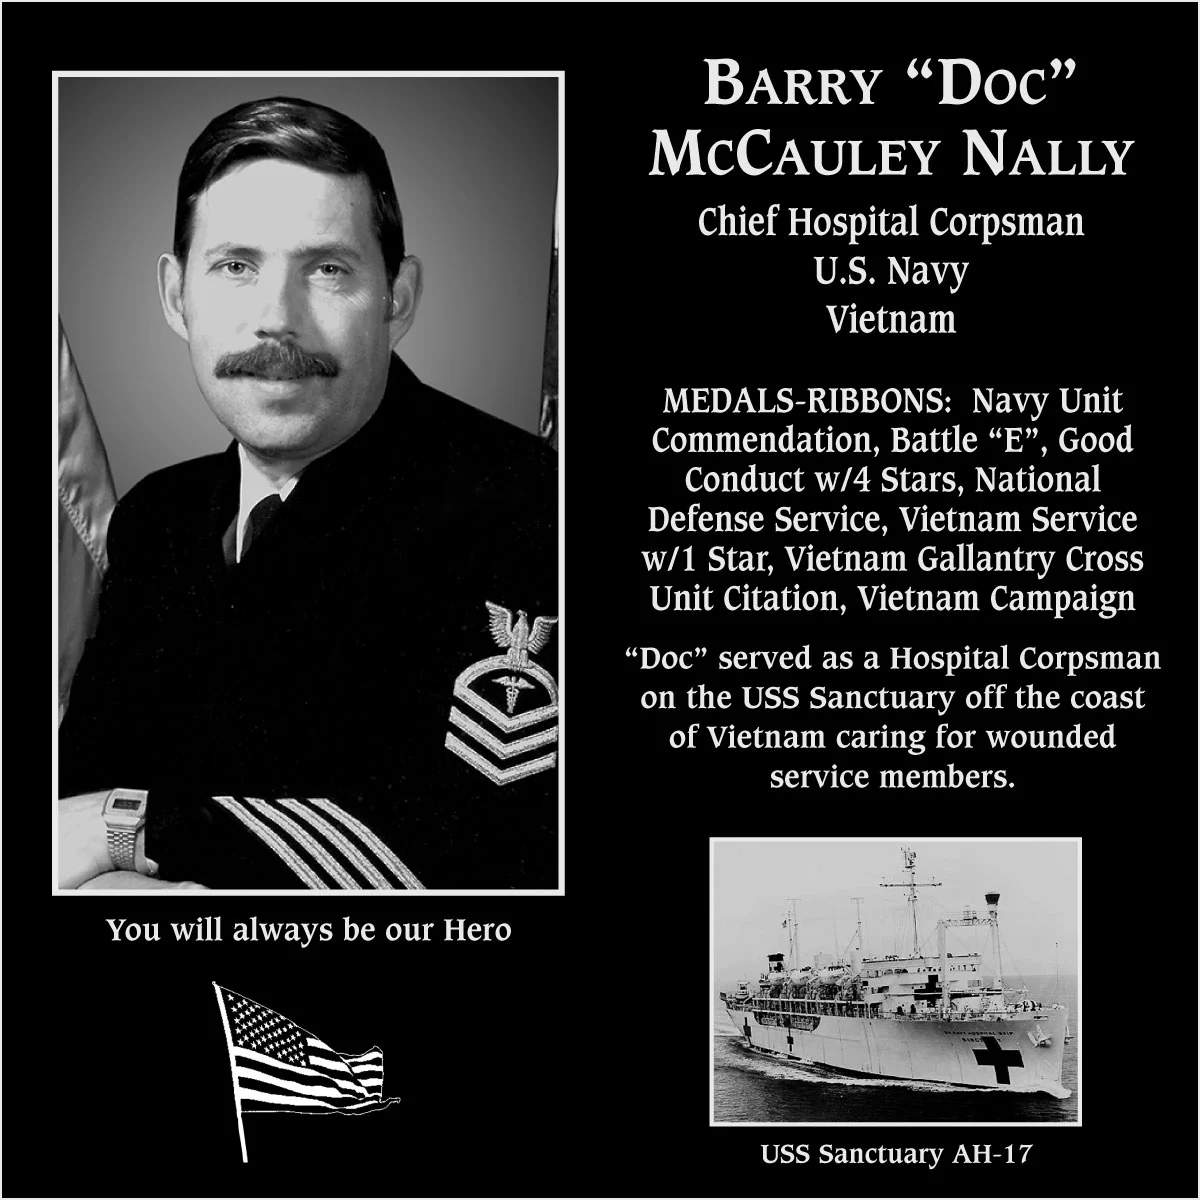 Barry McCauley “Doc” Nally